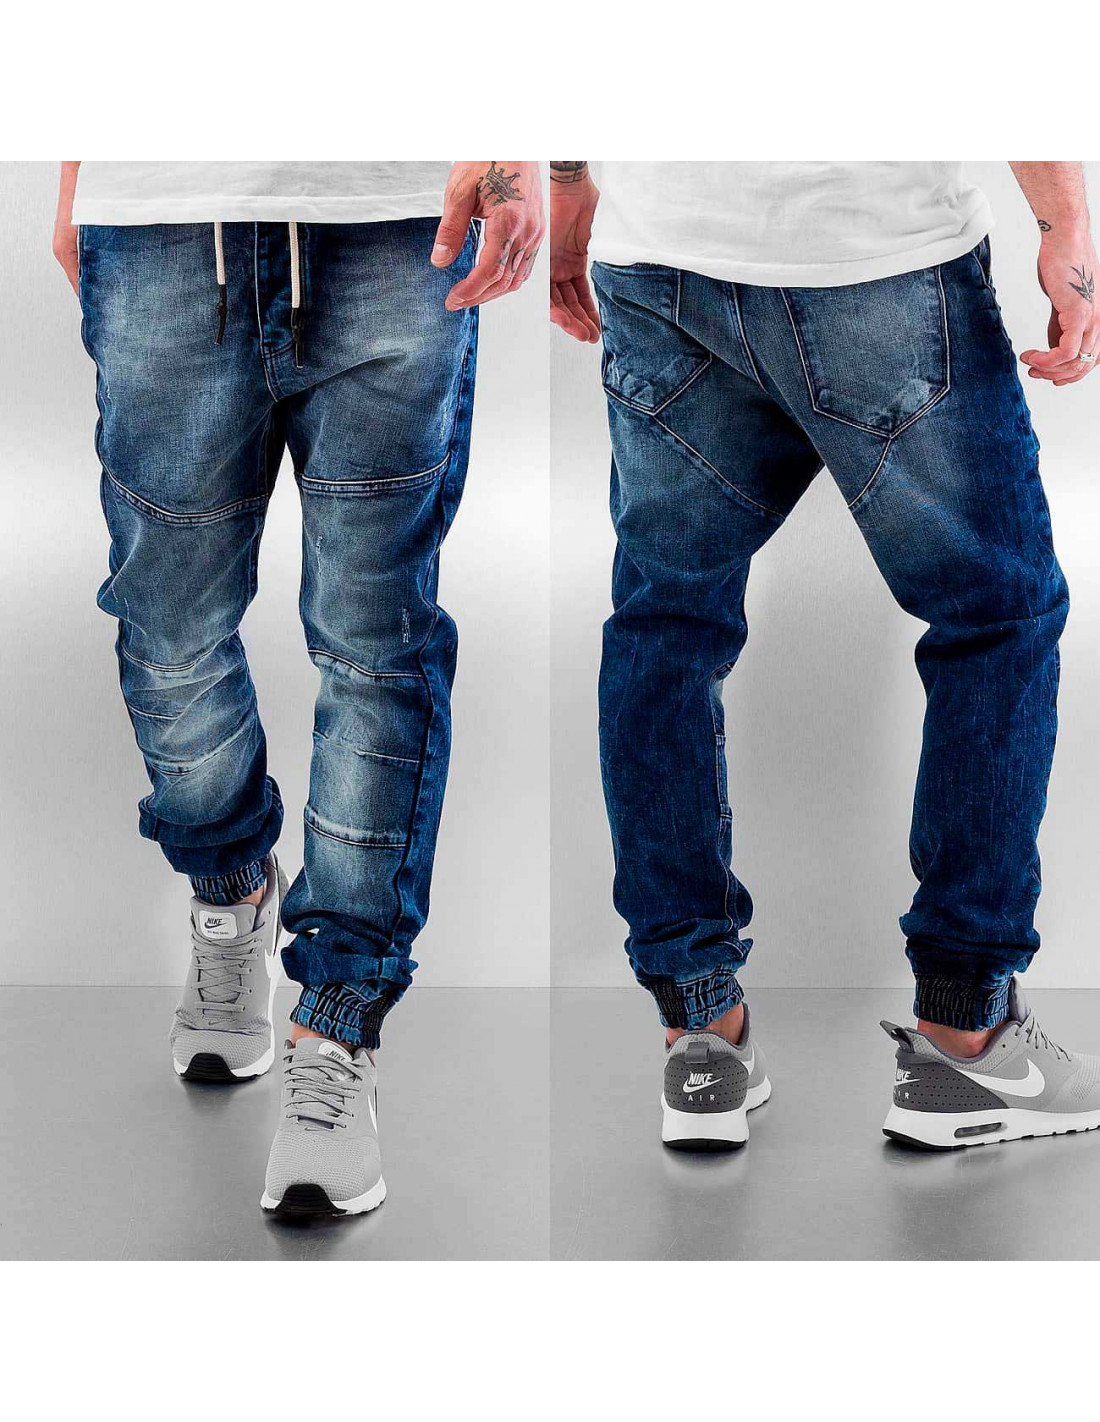 Топ джинсы мужские. Тренди фит джинсы мужские. Bigrey джинсы мужские. Кархард джинсы широкие мужские. Джинсы мужские модные широкие.